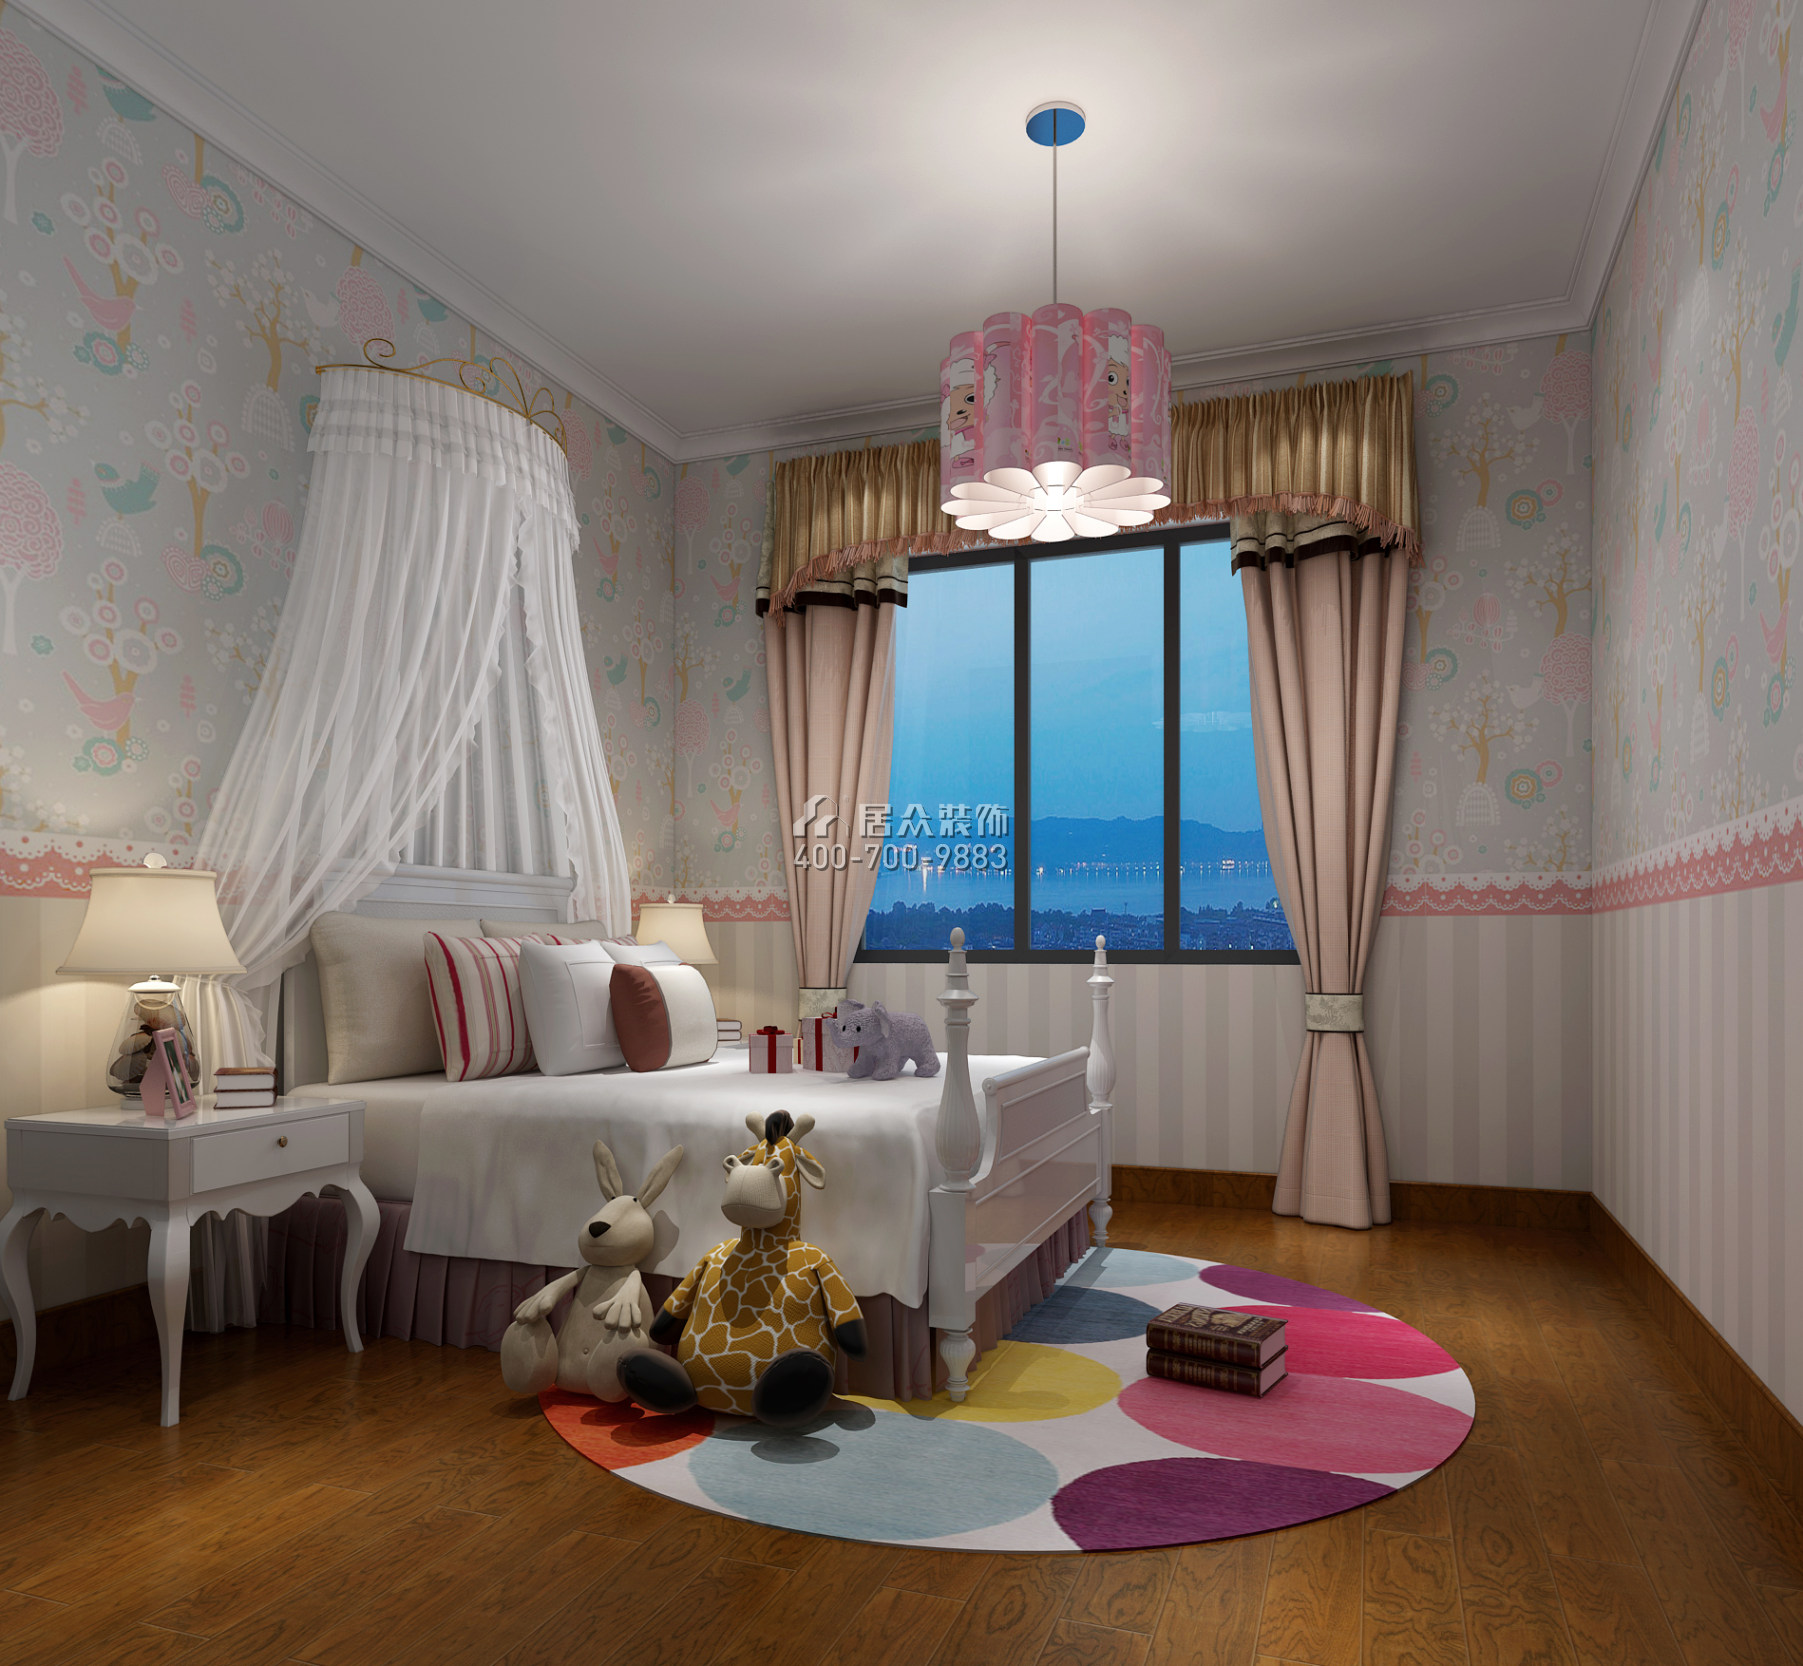 维港半岛167平方米美式风格平层户型卧室装修效果图